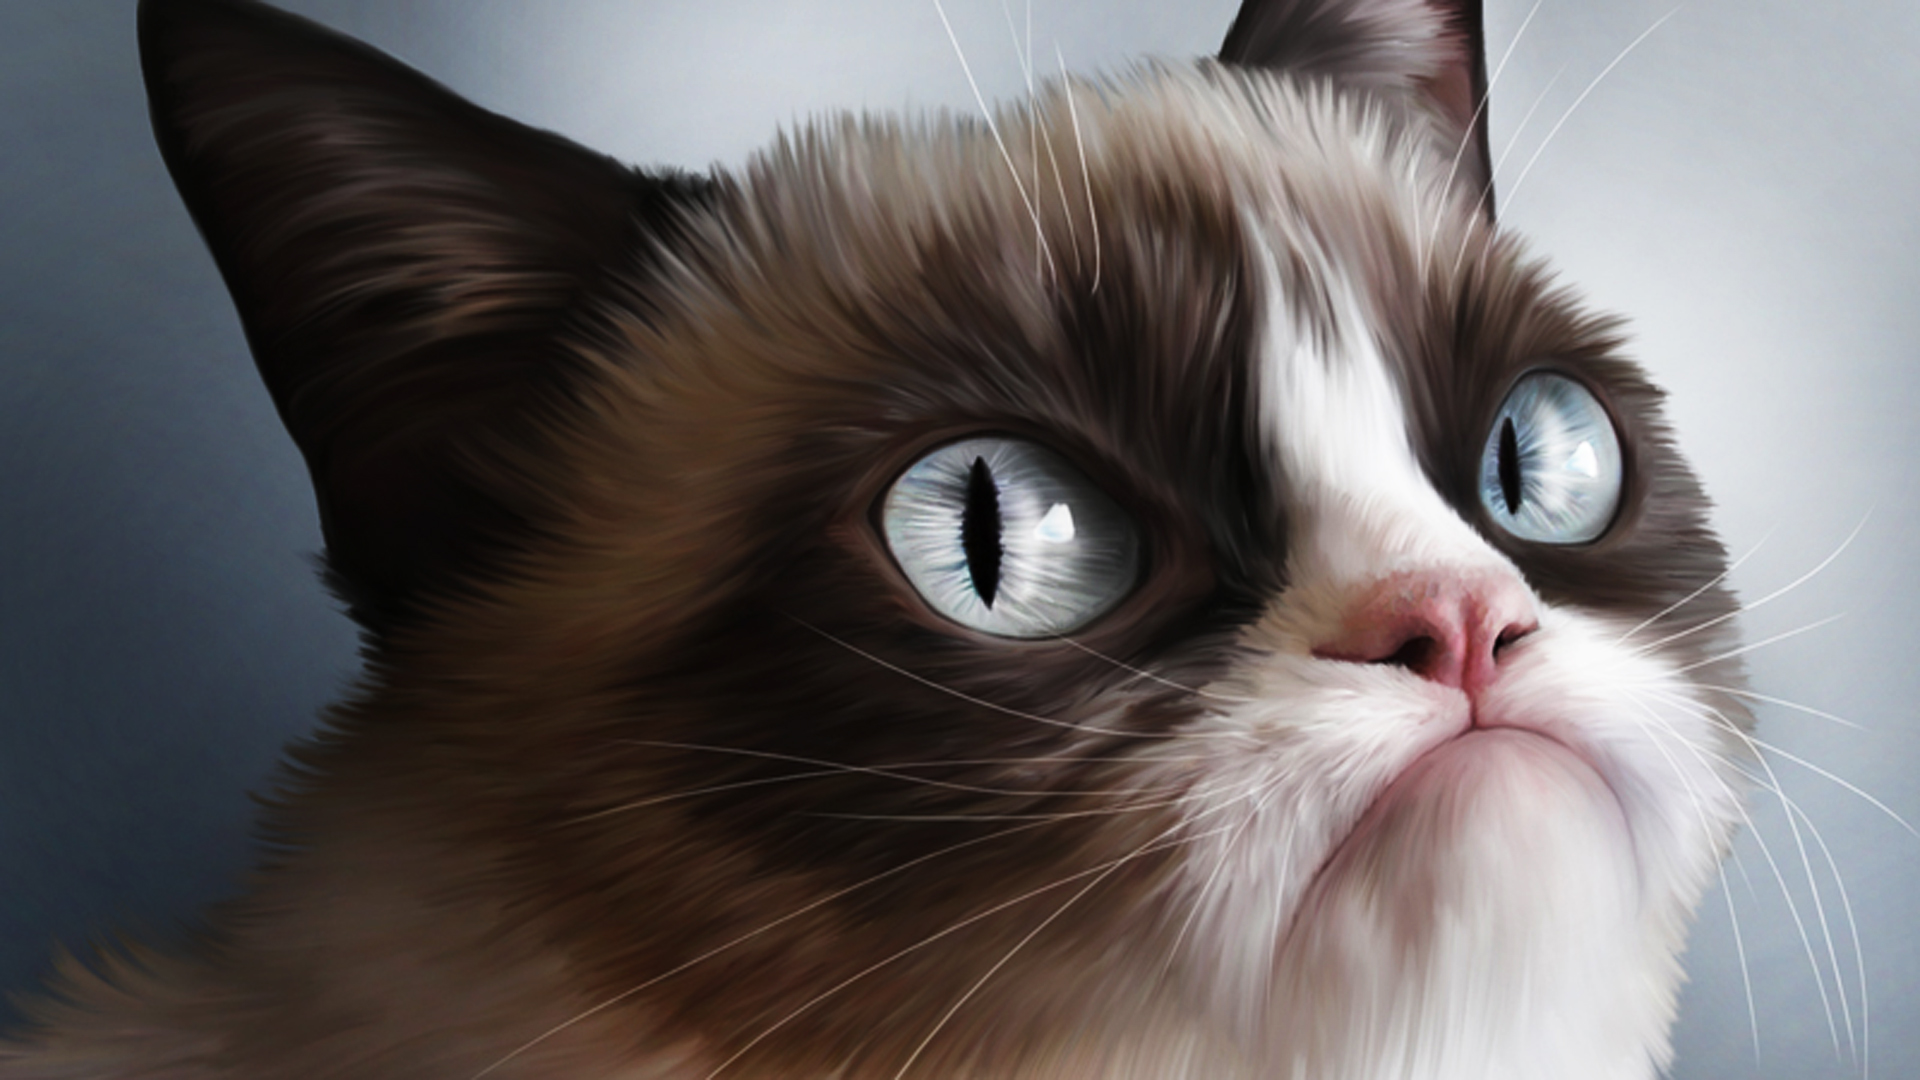 Angry Cat Free Desktop Wallpaper - WallpaperSafari